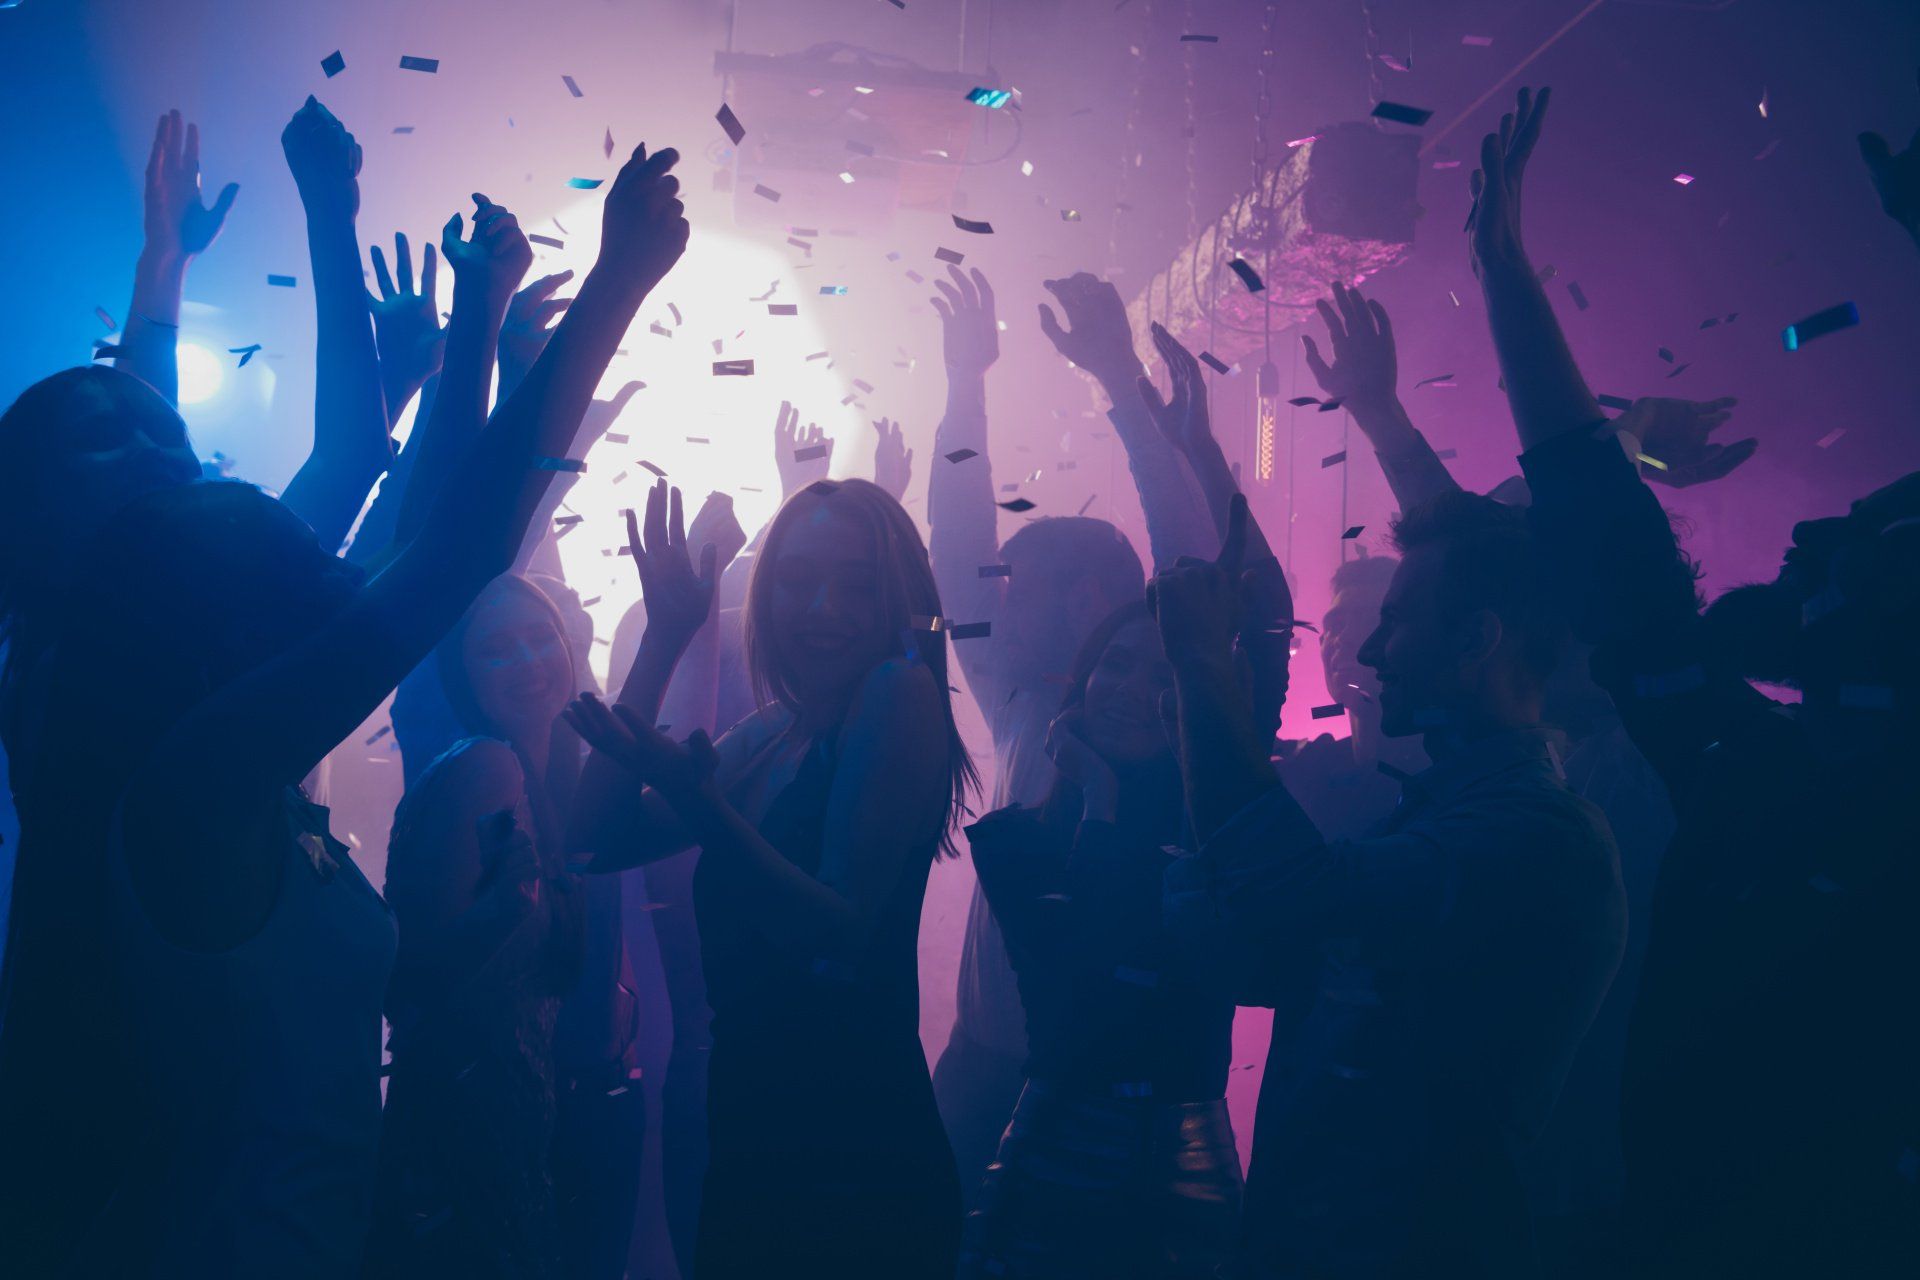 People dance in a nightclub.